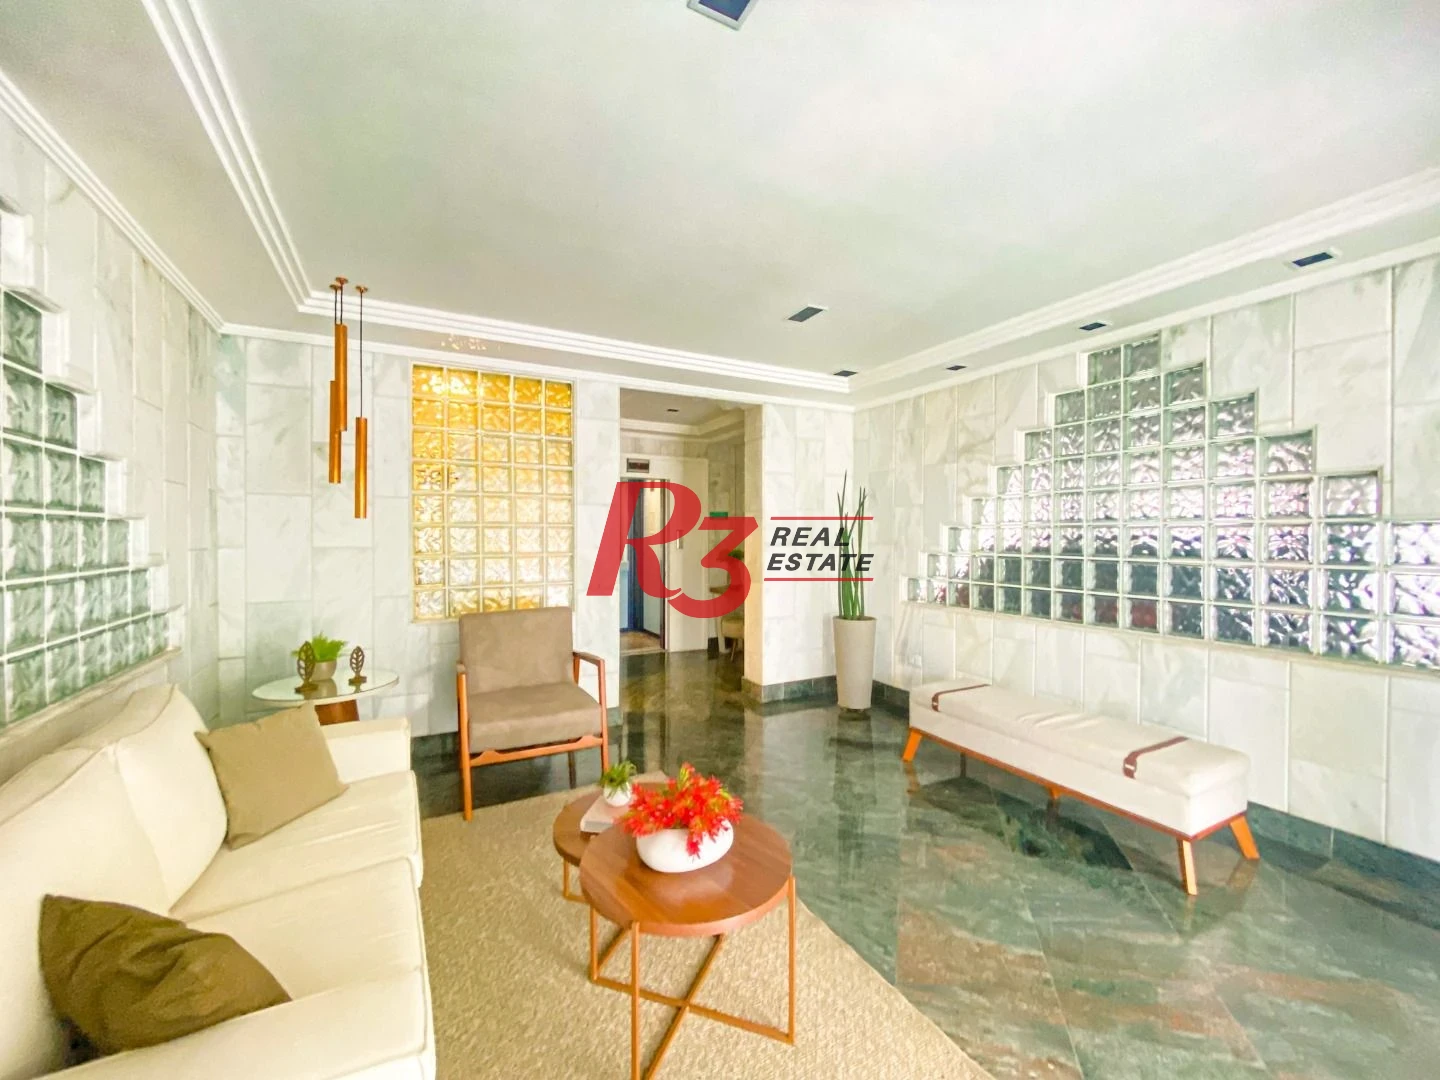 Vende-se excelente apartamento  com três dormitórios no bairro de Campo Grande, em Santos-SP